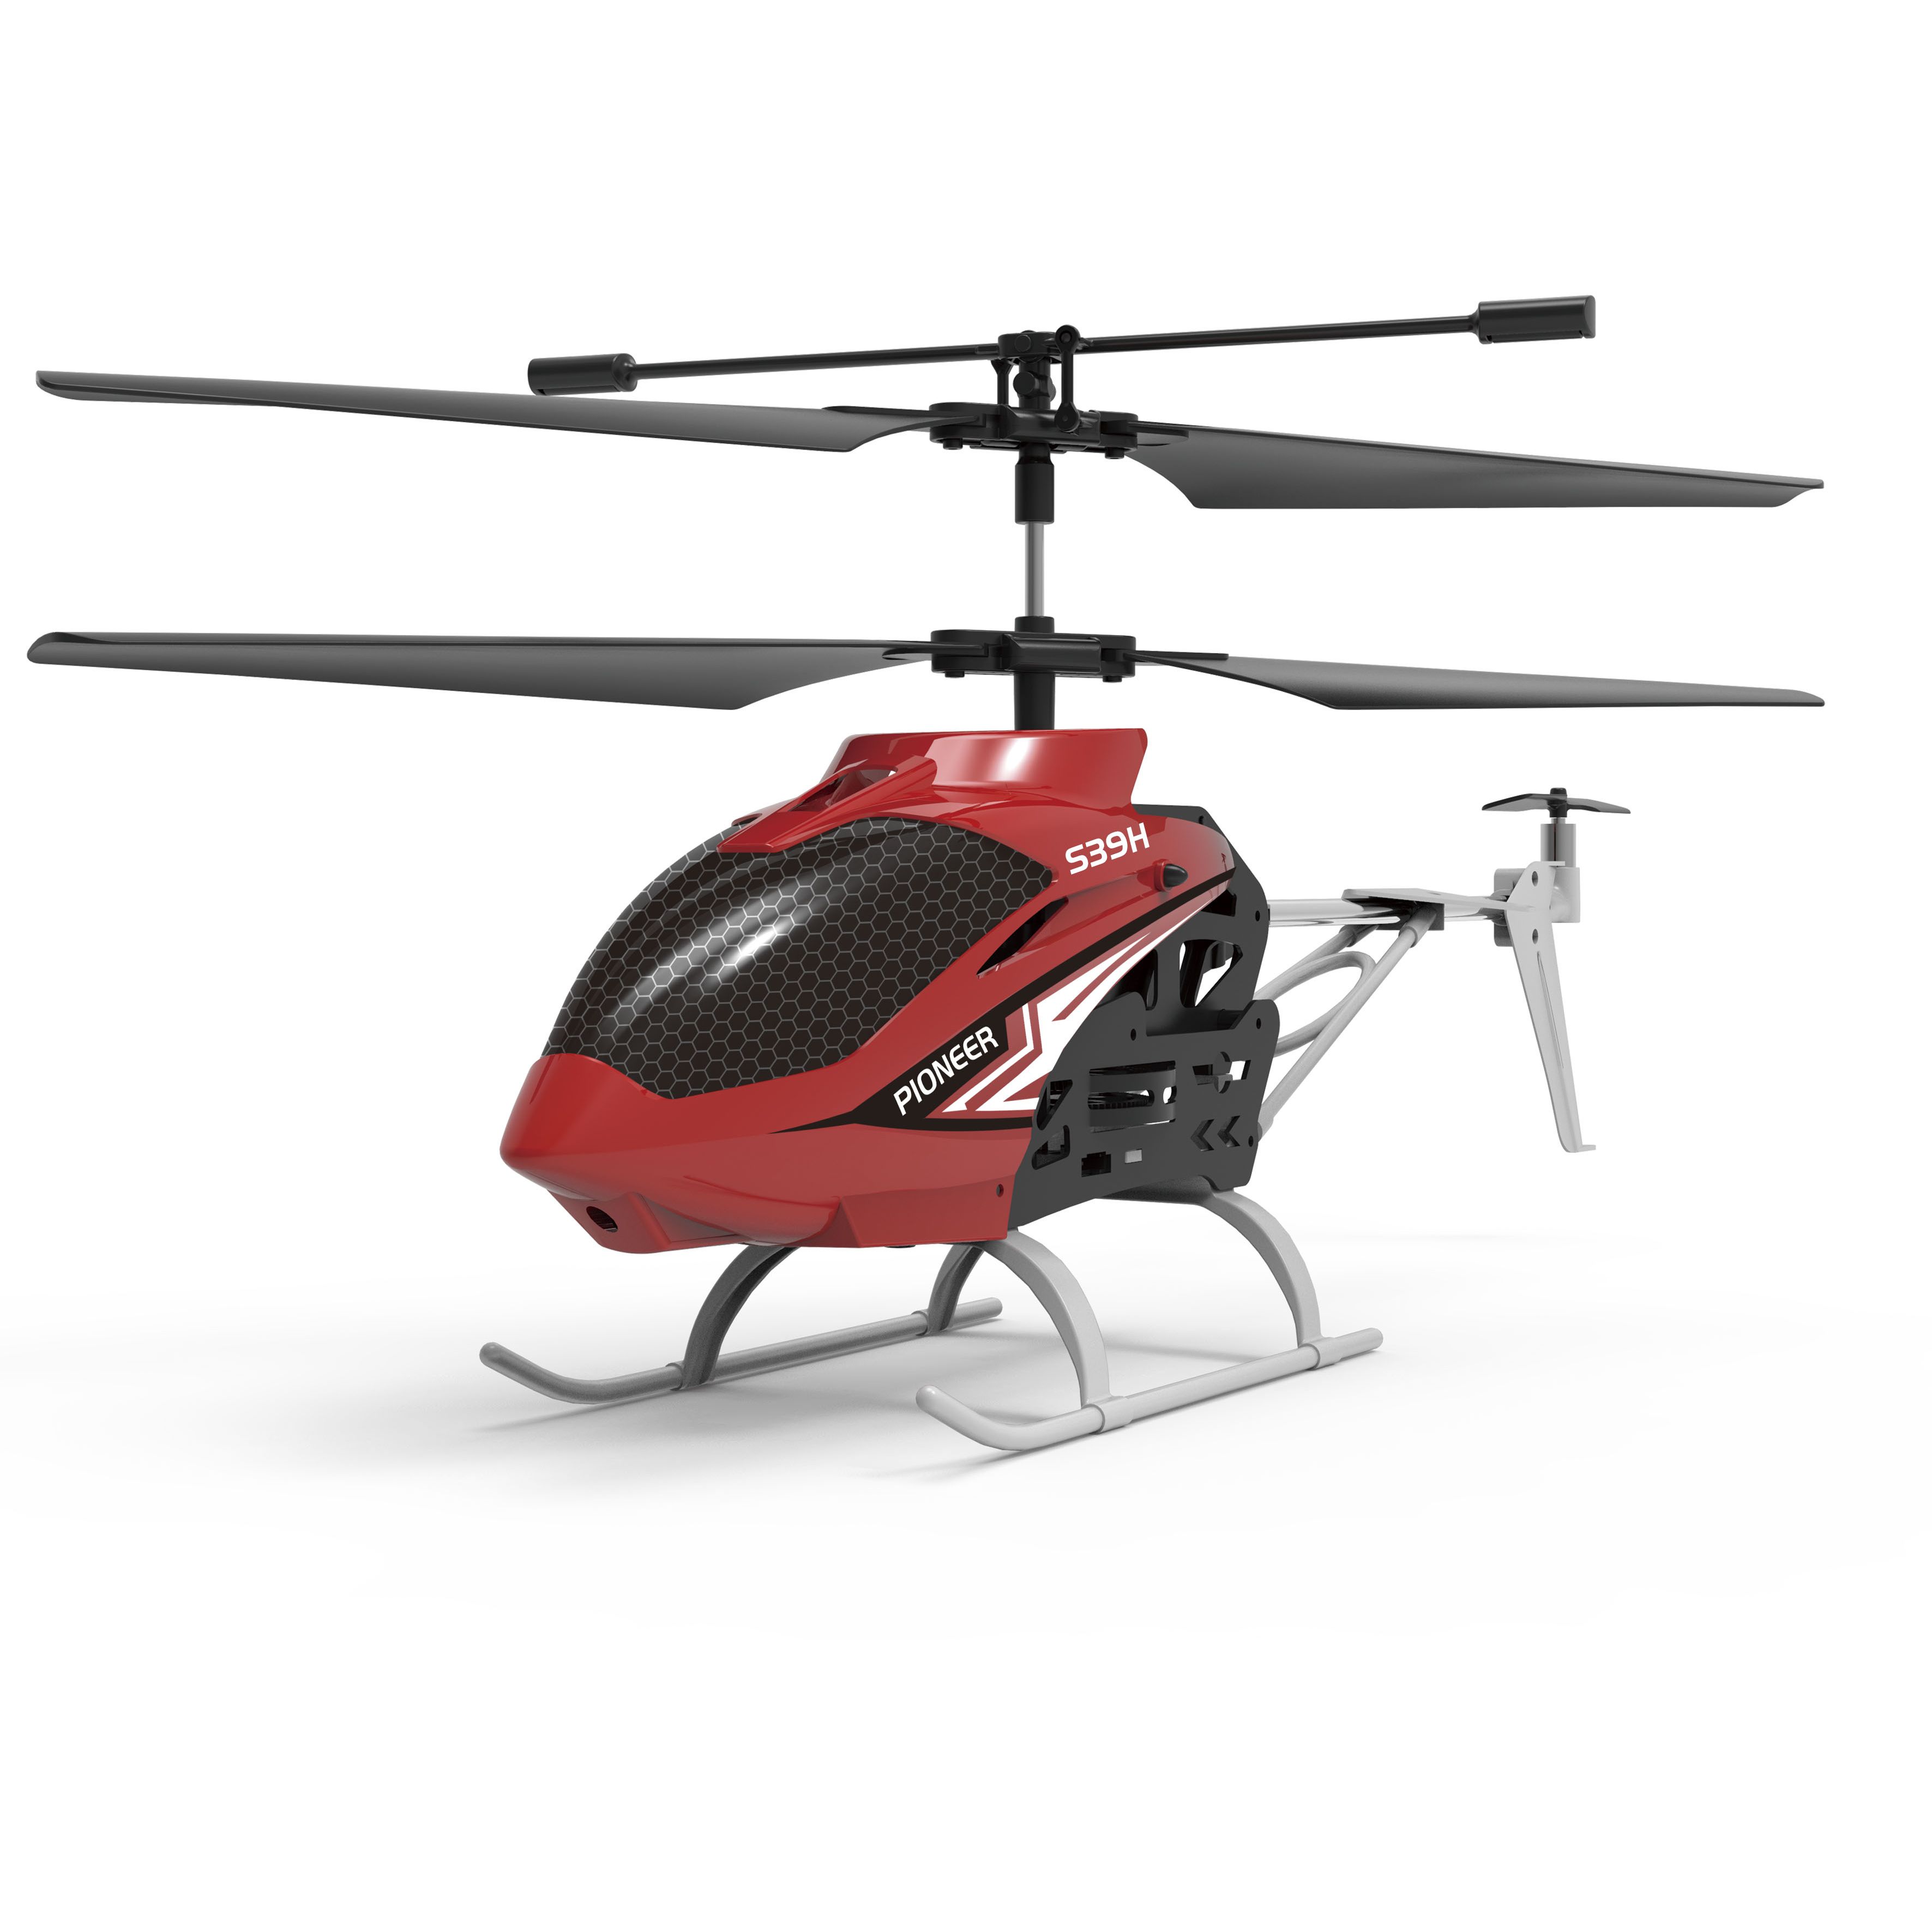 Іграшка на радіокеруванні Syma Гелікоптер 22 см (S39H) - фото 1